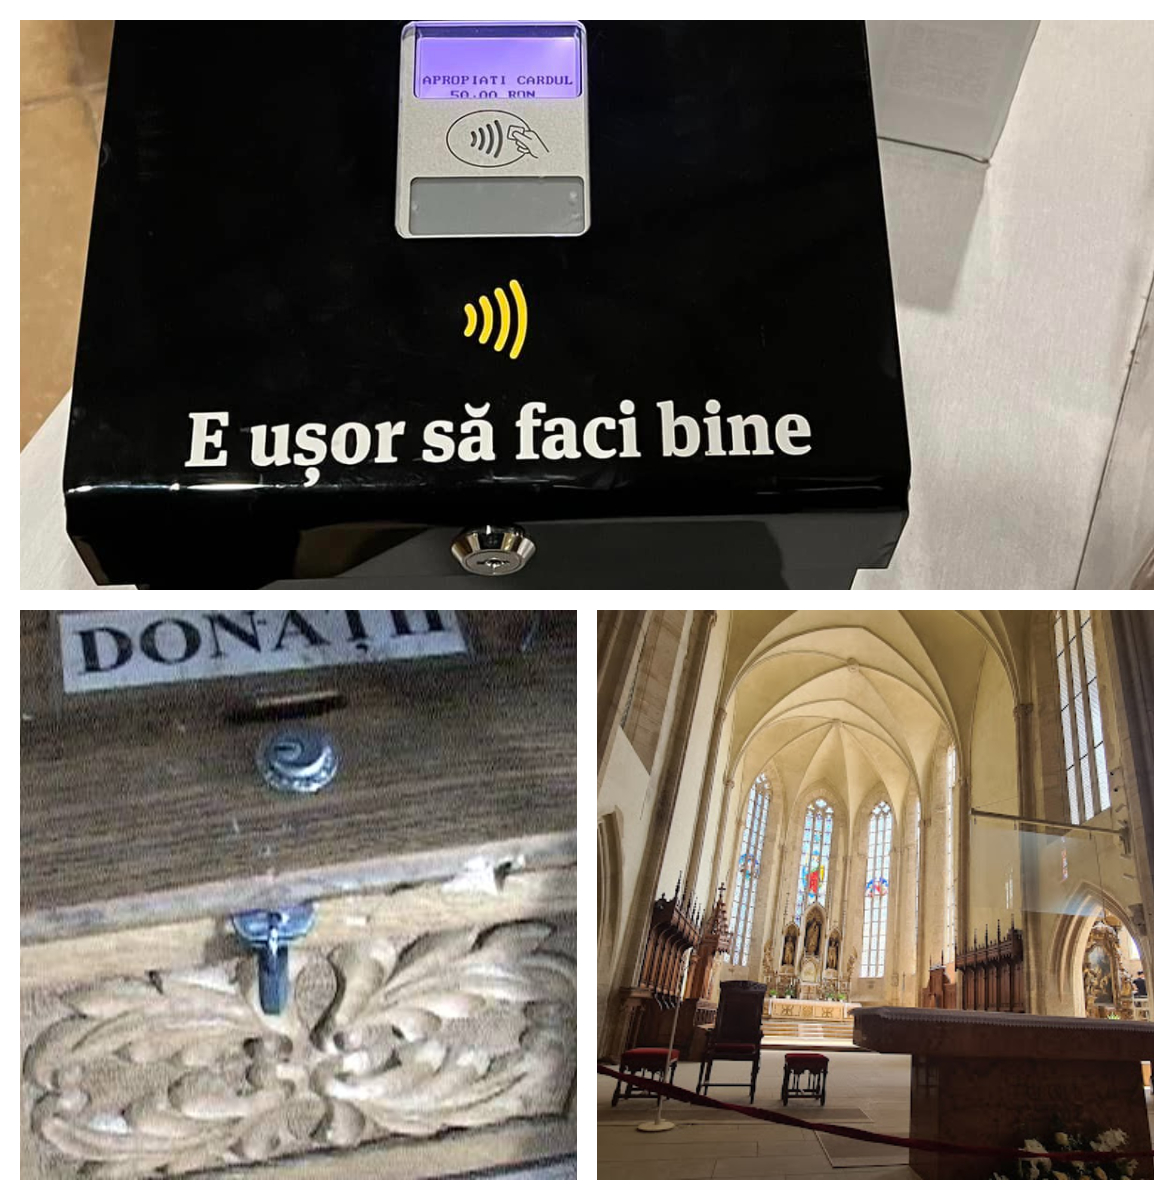 Premieră! O biserică românească a instalat cutia milei contactless. Oamenii cu suflet mare pot folosi cardul și telefonul pentru donații